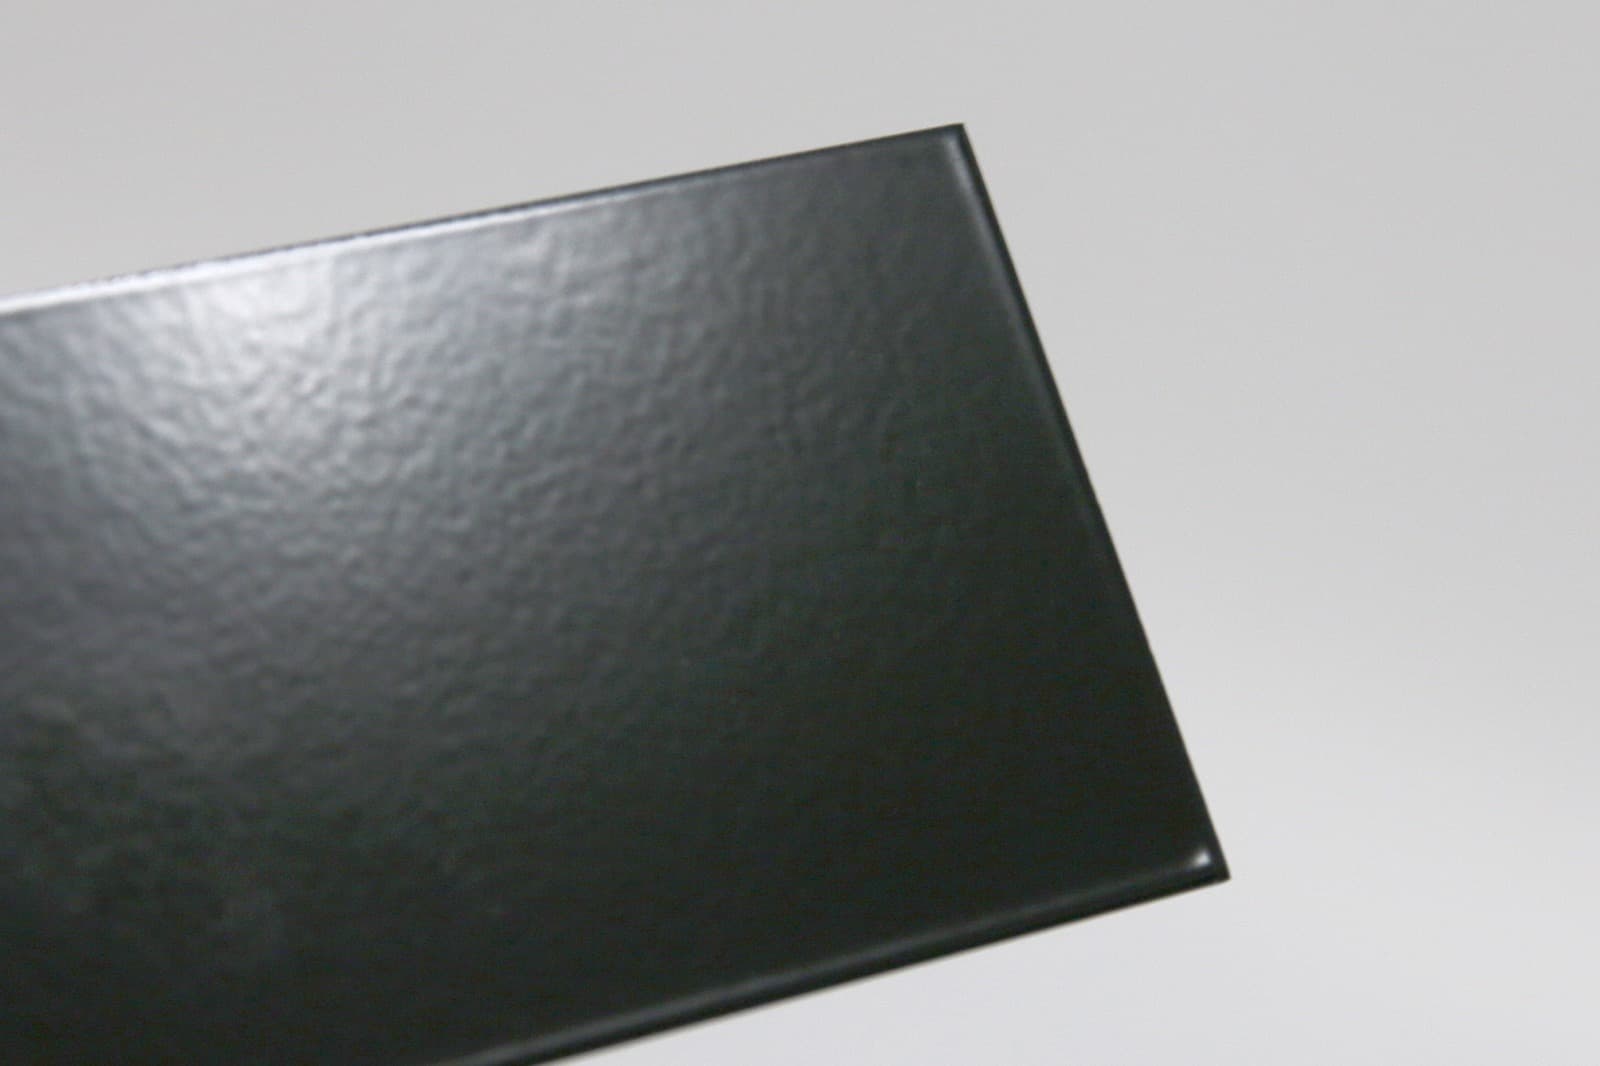 キューブ型レンジフード 照明付き W750×H500 ブラック KB-KC019-13-G162 質感見本。ツヤがあります